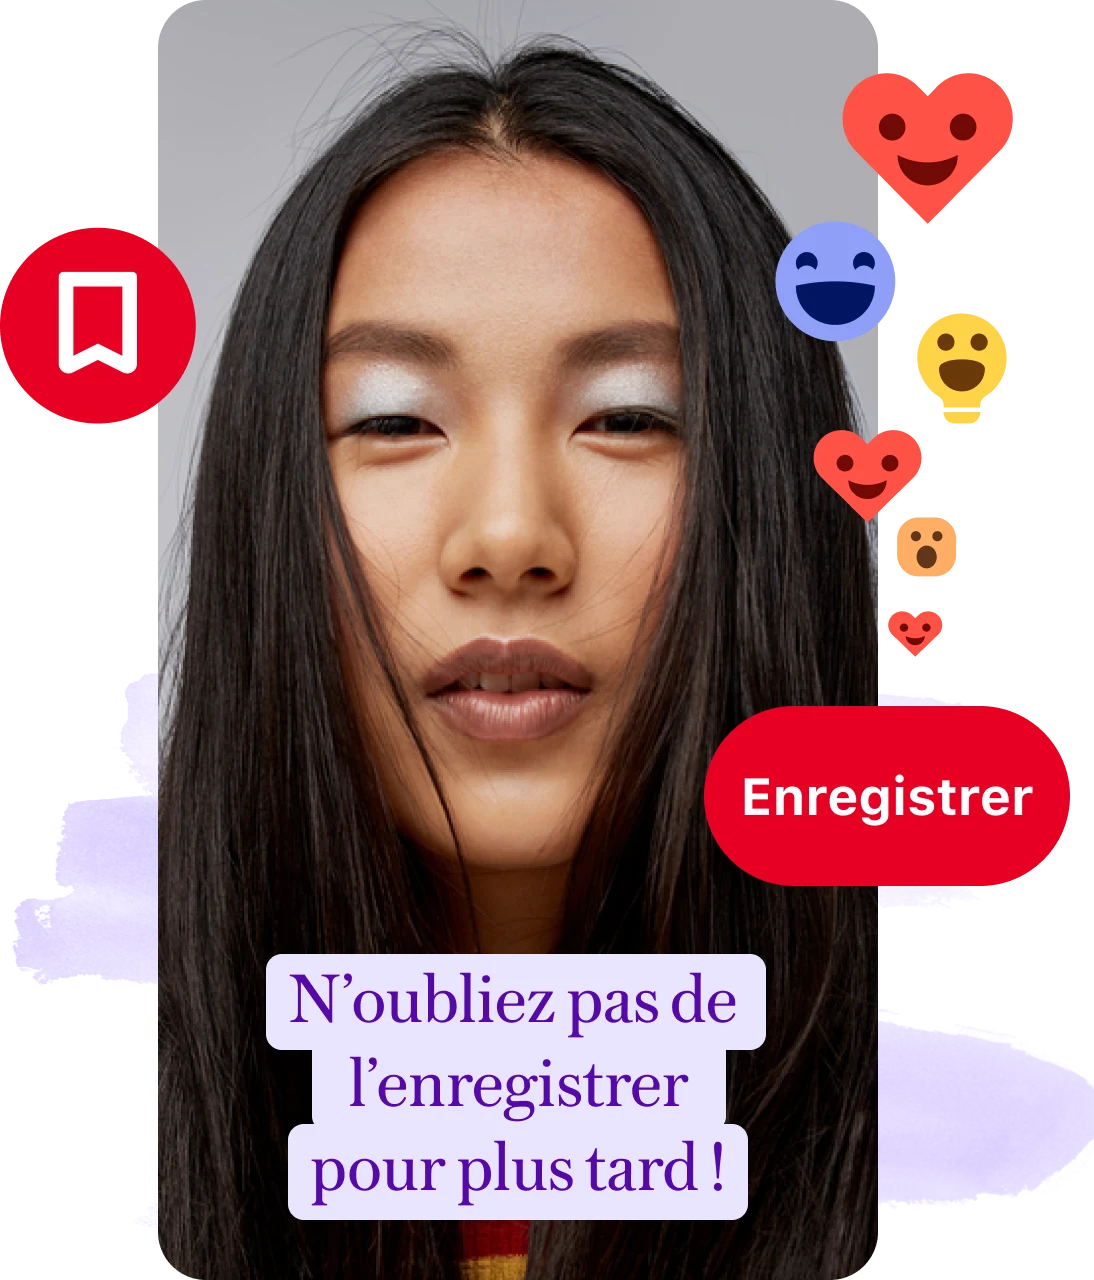 Collage d’épingle avec le visage d’une femme et une mention rappelant les utilisateurs d’enregistrer, un bouton Enregistrer et des réactions emoji